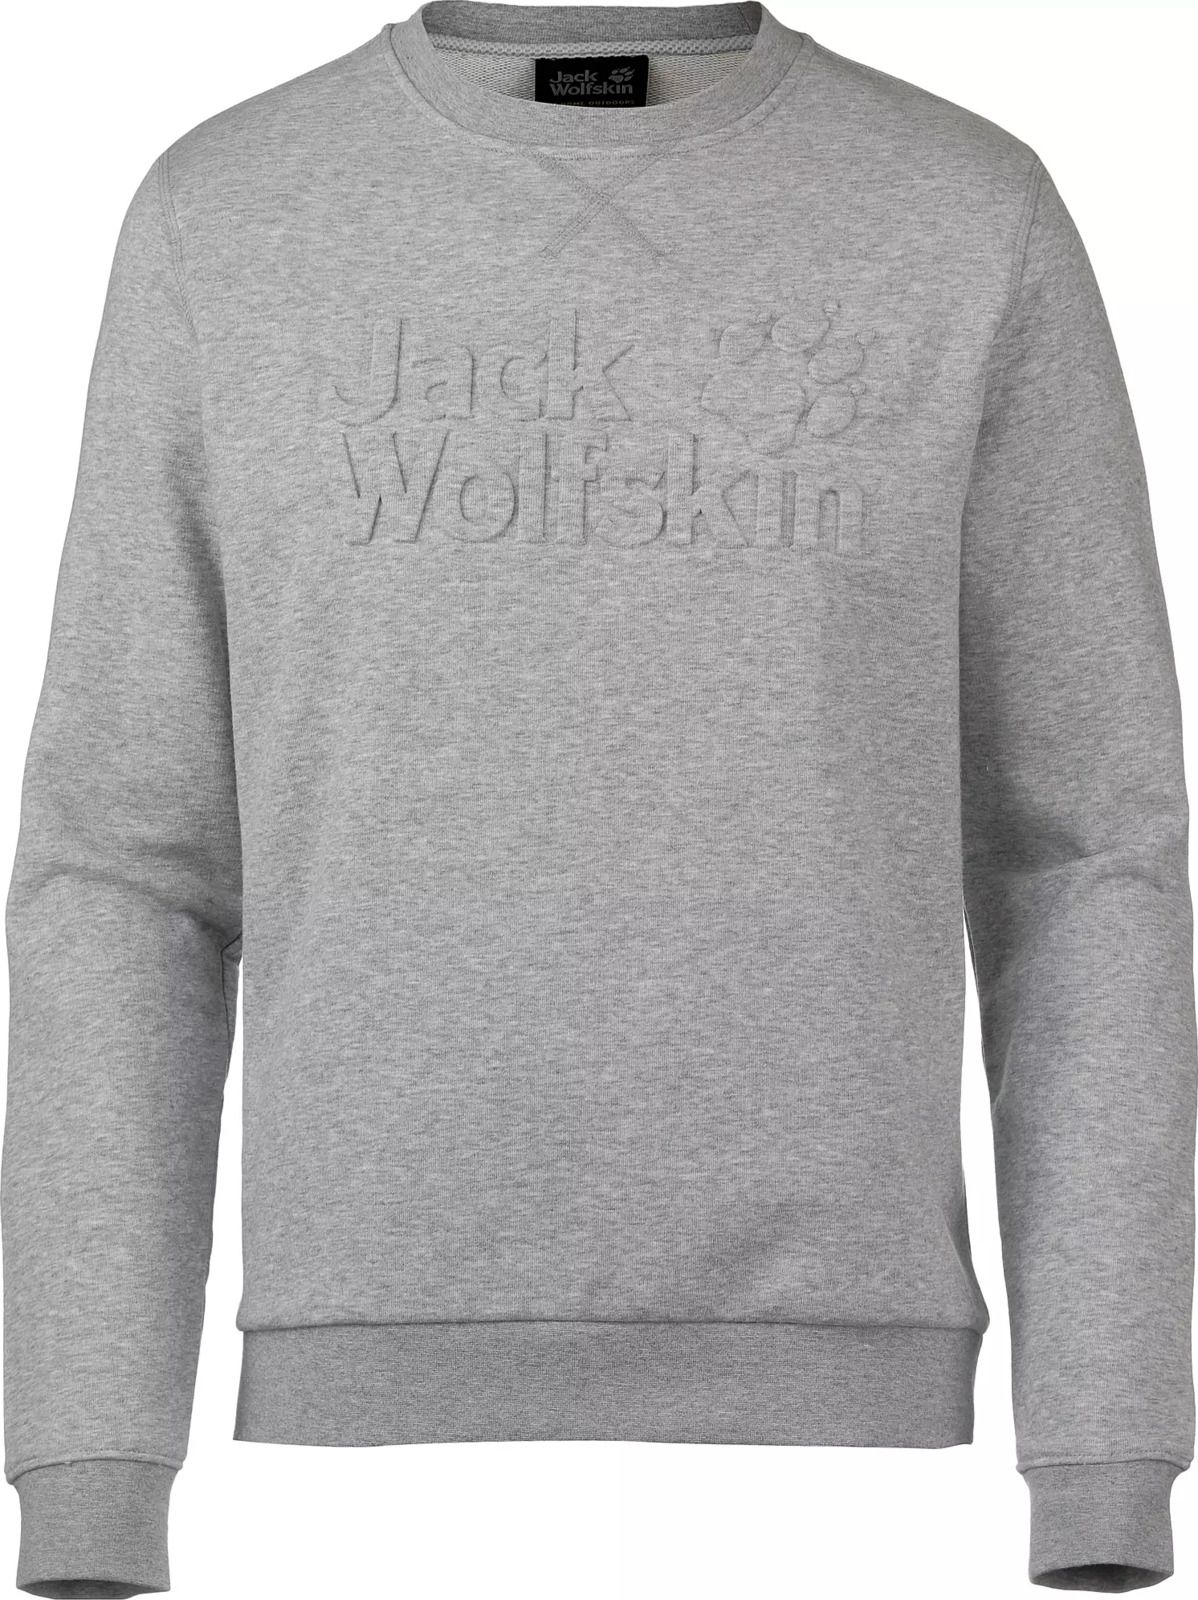   Jack Wolfskin Logo Sweatshirt M, : -. 5018891-6111.  M (46)